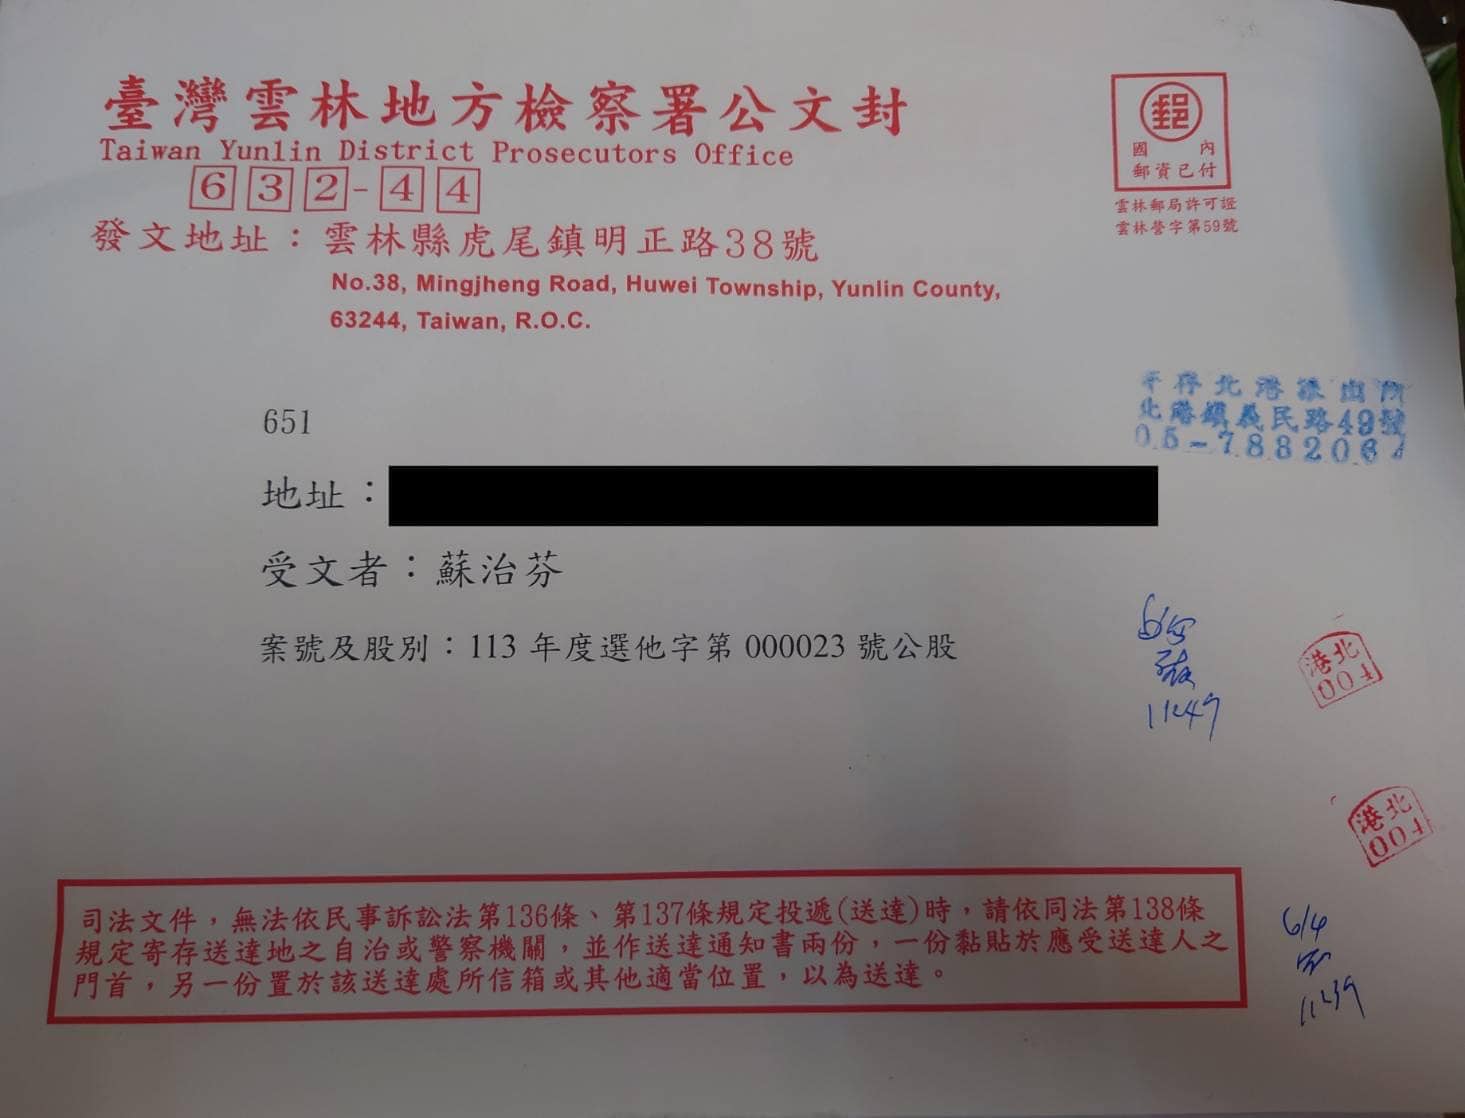 云林地检署追查讯息来源，确认选前散发「飞弹」假讯息的是中国「上海创蓝云智公司」所发出。图／苏治芬提供